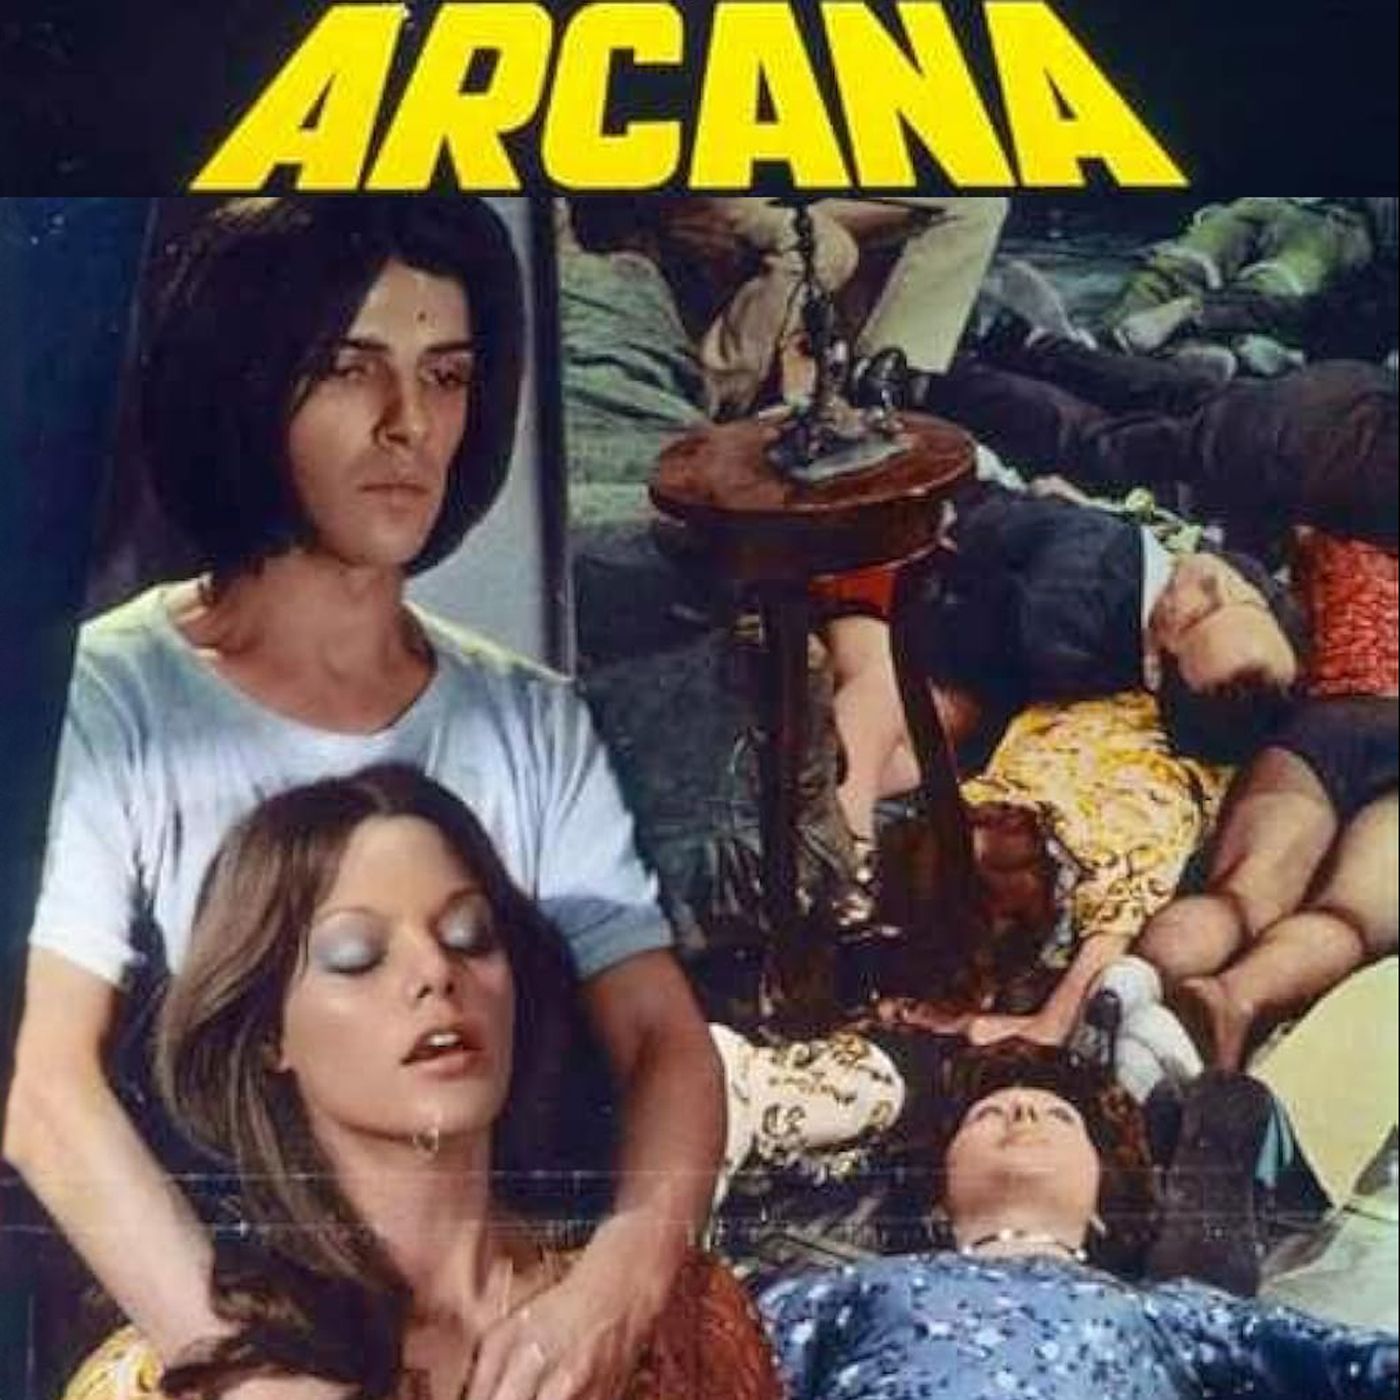 Episode 662: Arcana (1972)